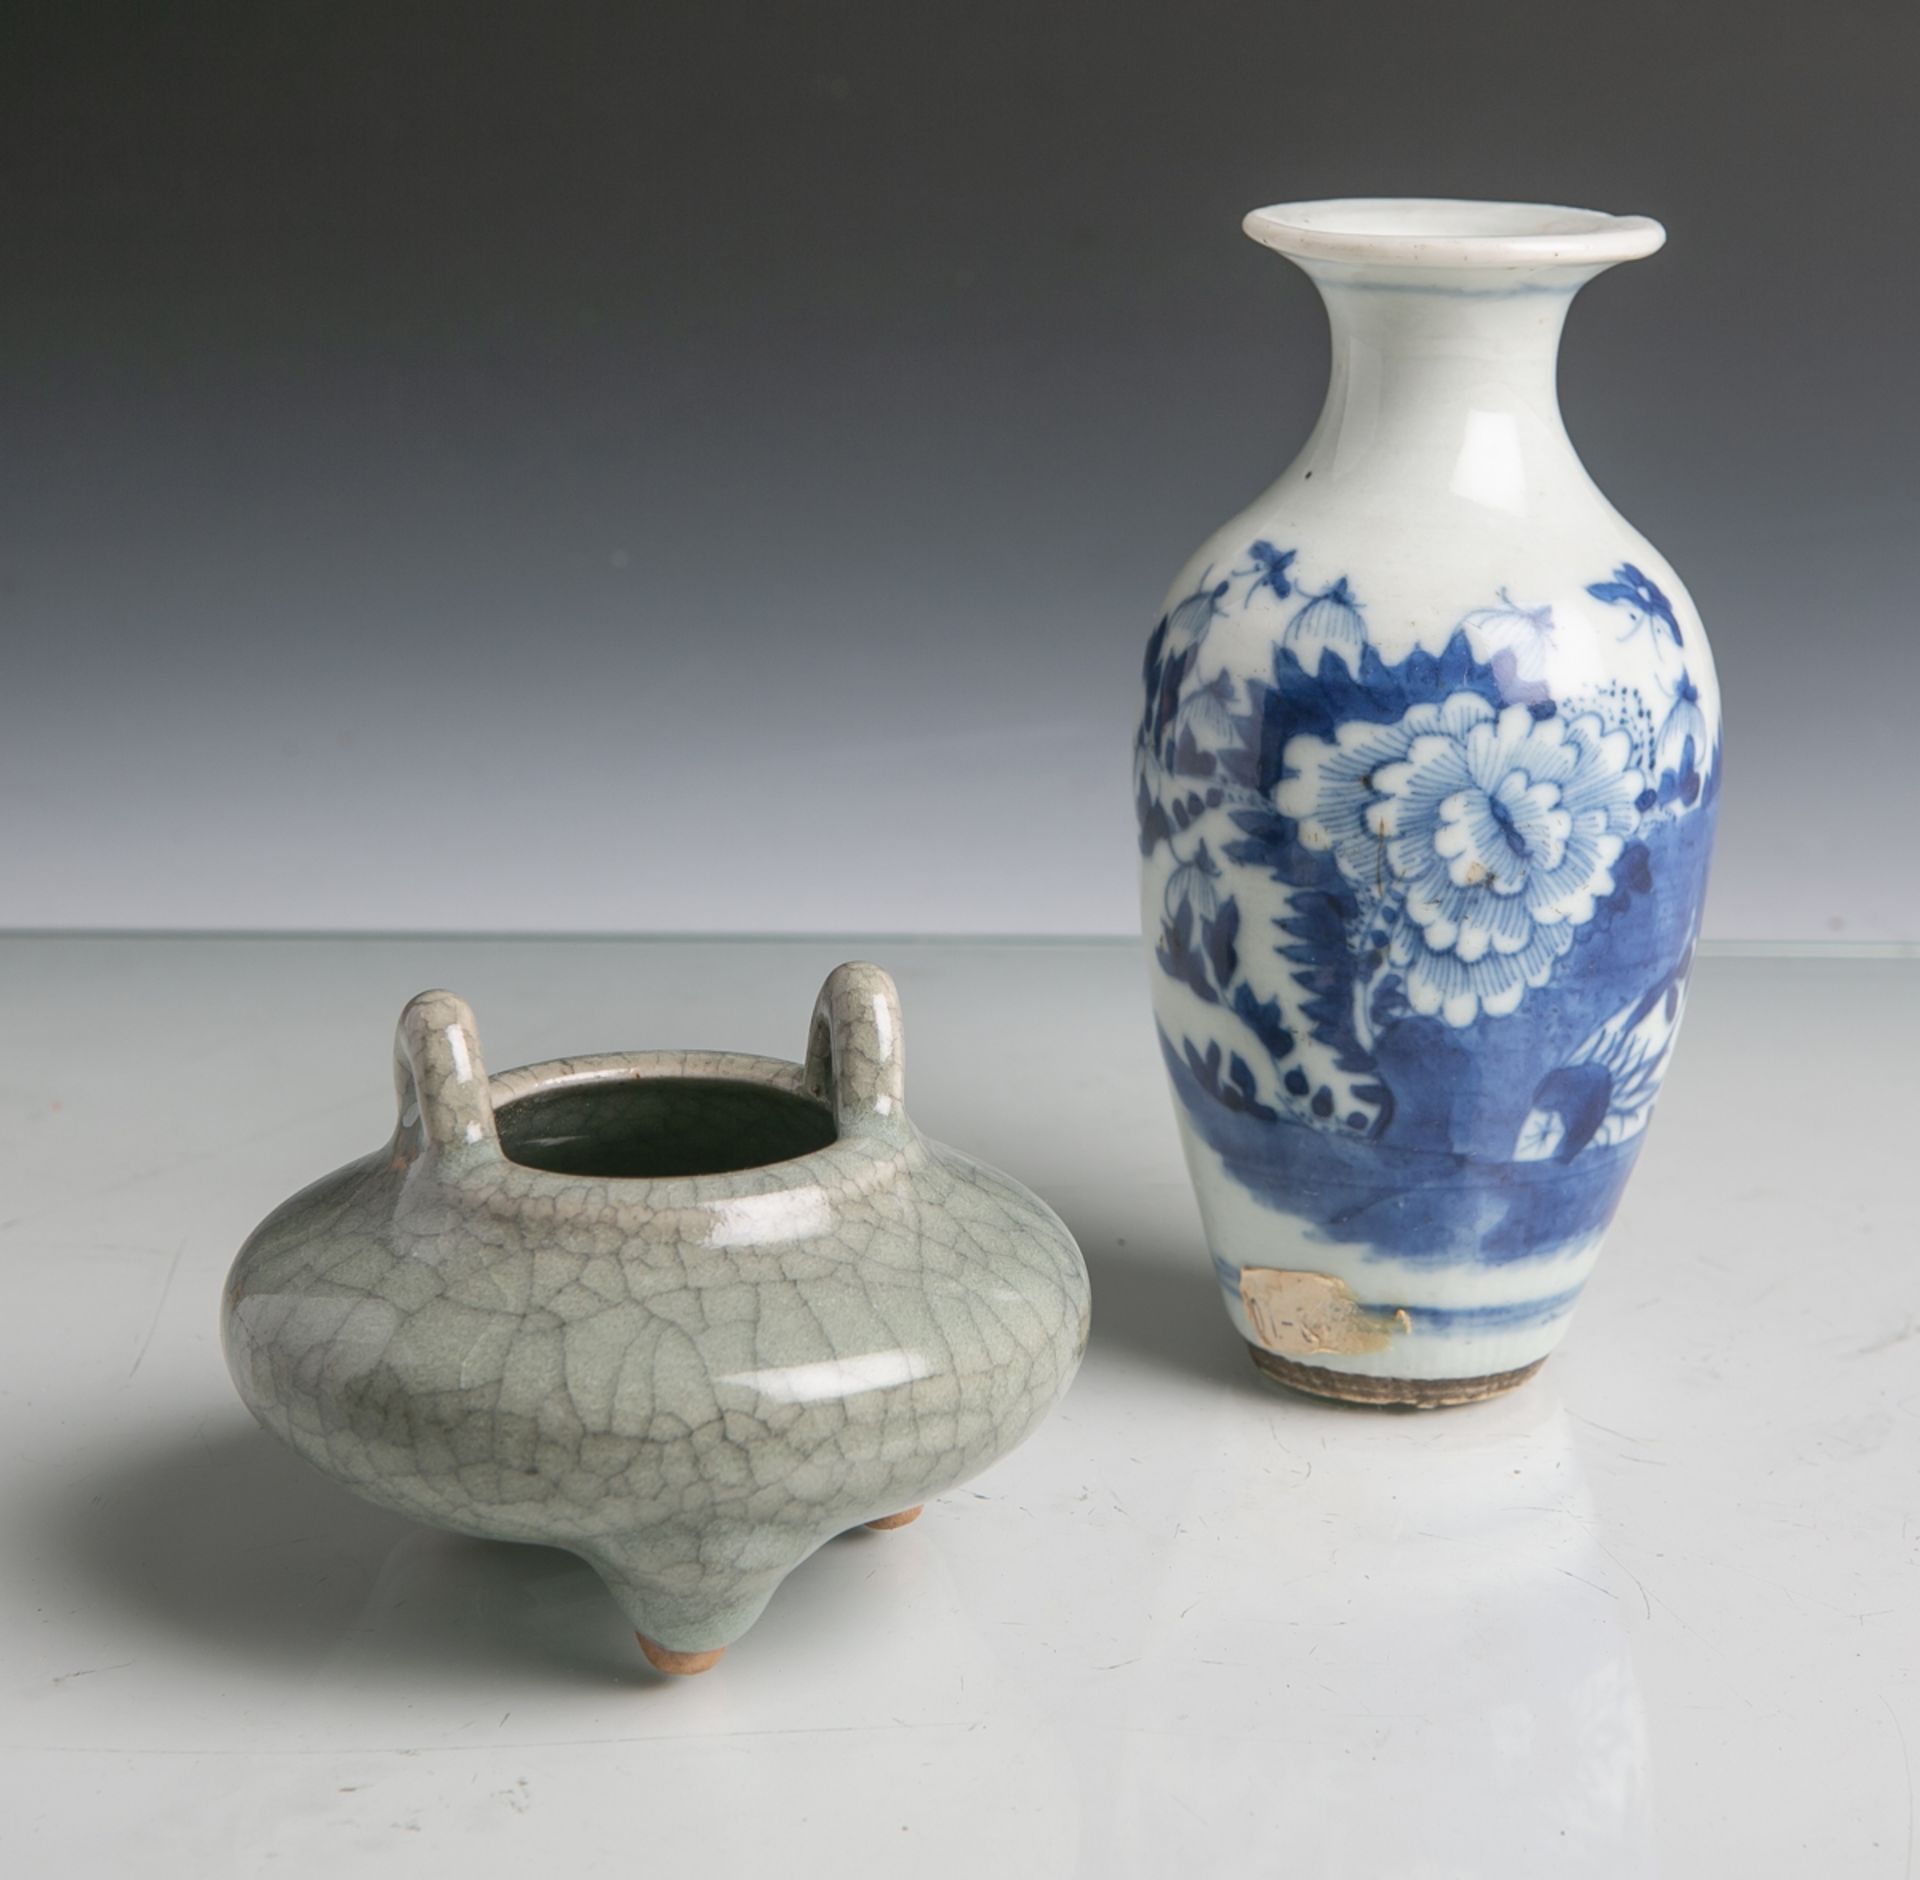 2 kl. Vasen (China, 18./19. Jahrhundert), Porzellan, davon 1x grünlich graue Vase m.Krakelee-Muster,